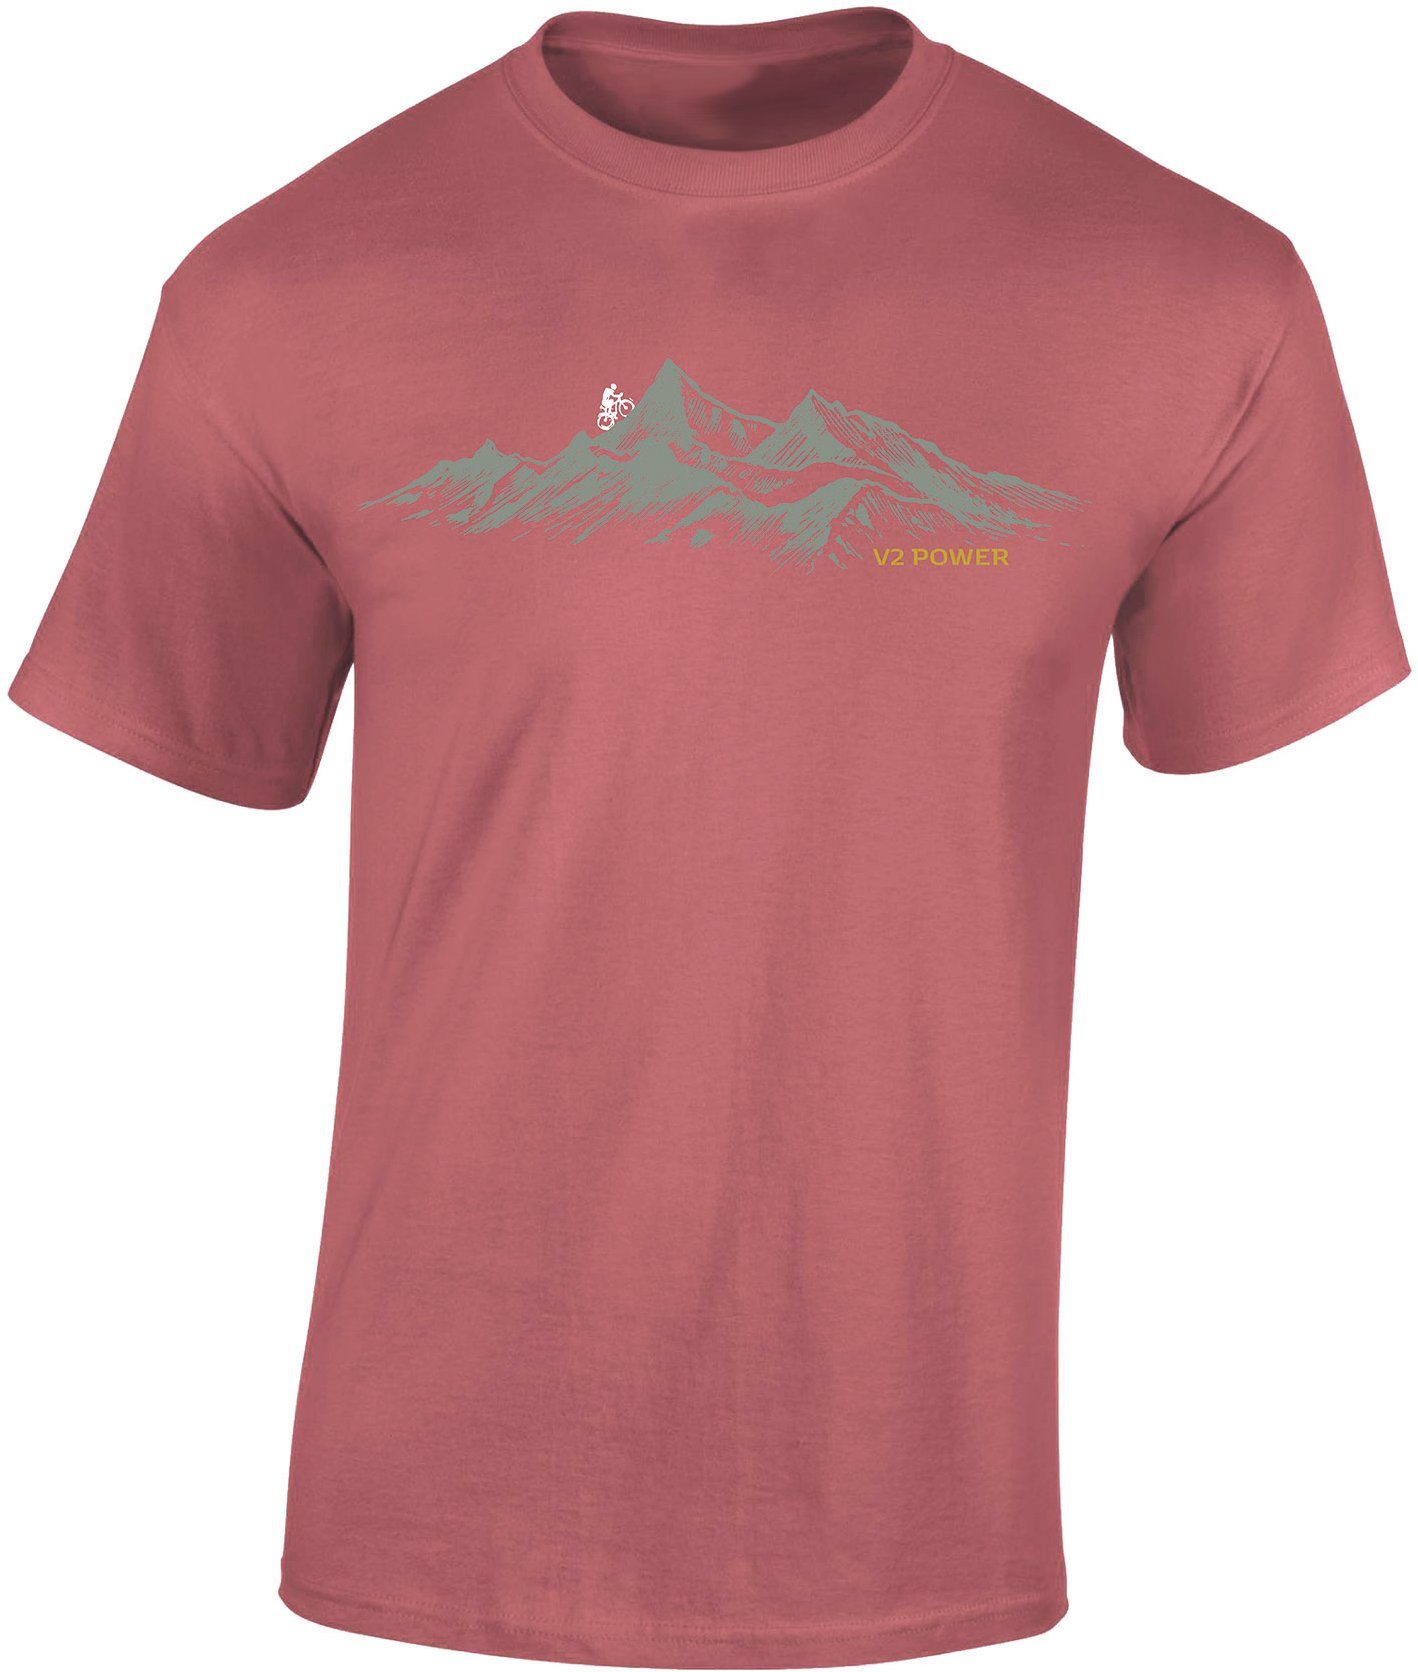 Baddery Print-Shirt Fahrrad T-Shirt : V2 Power - Sport Tshirts Herren - Mountainbike Shirt, hochwertiger Siebdruck, auch Übergrößen, aus Baumwolle